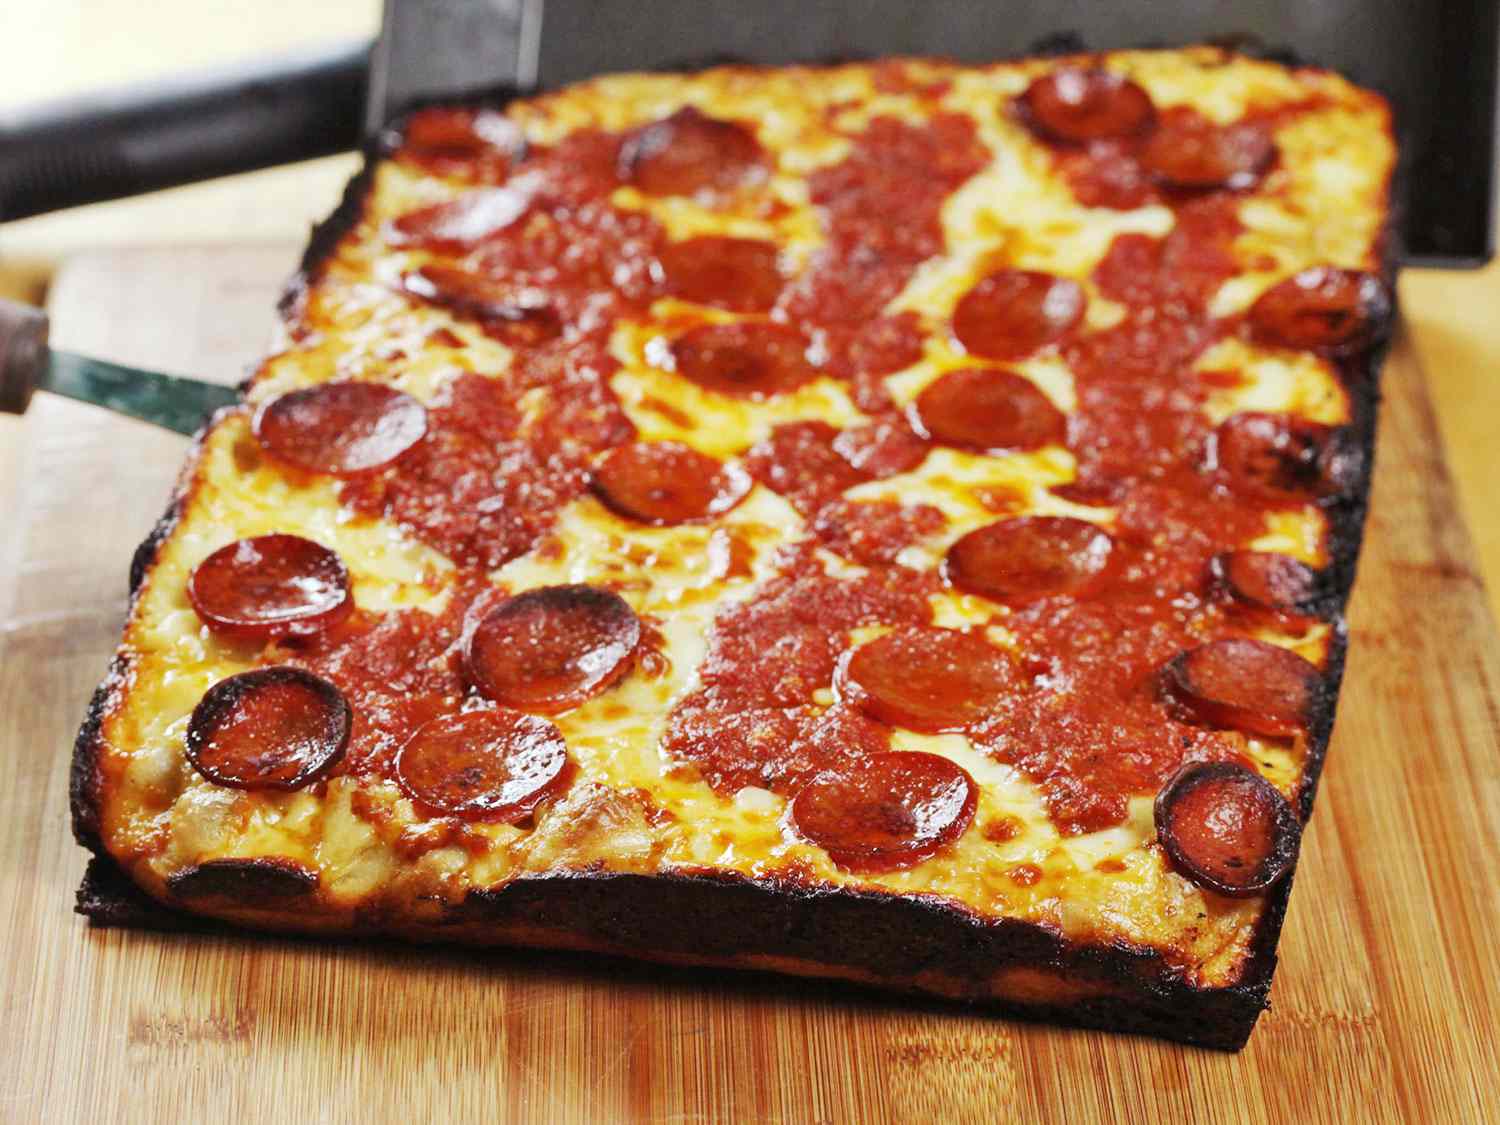 底特律风格的披萨放在砧板上gydF4y2Ba